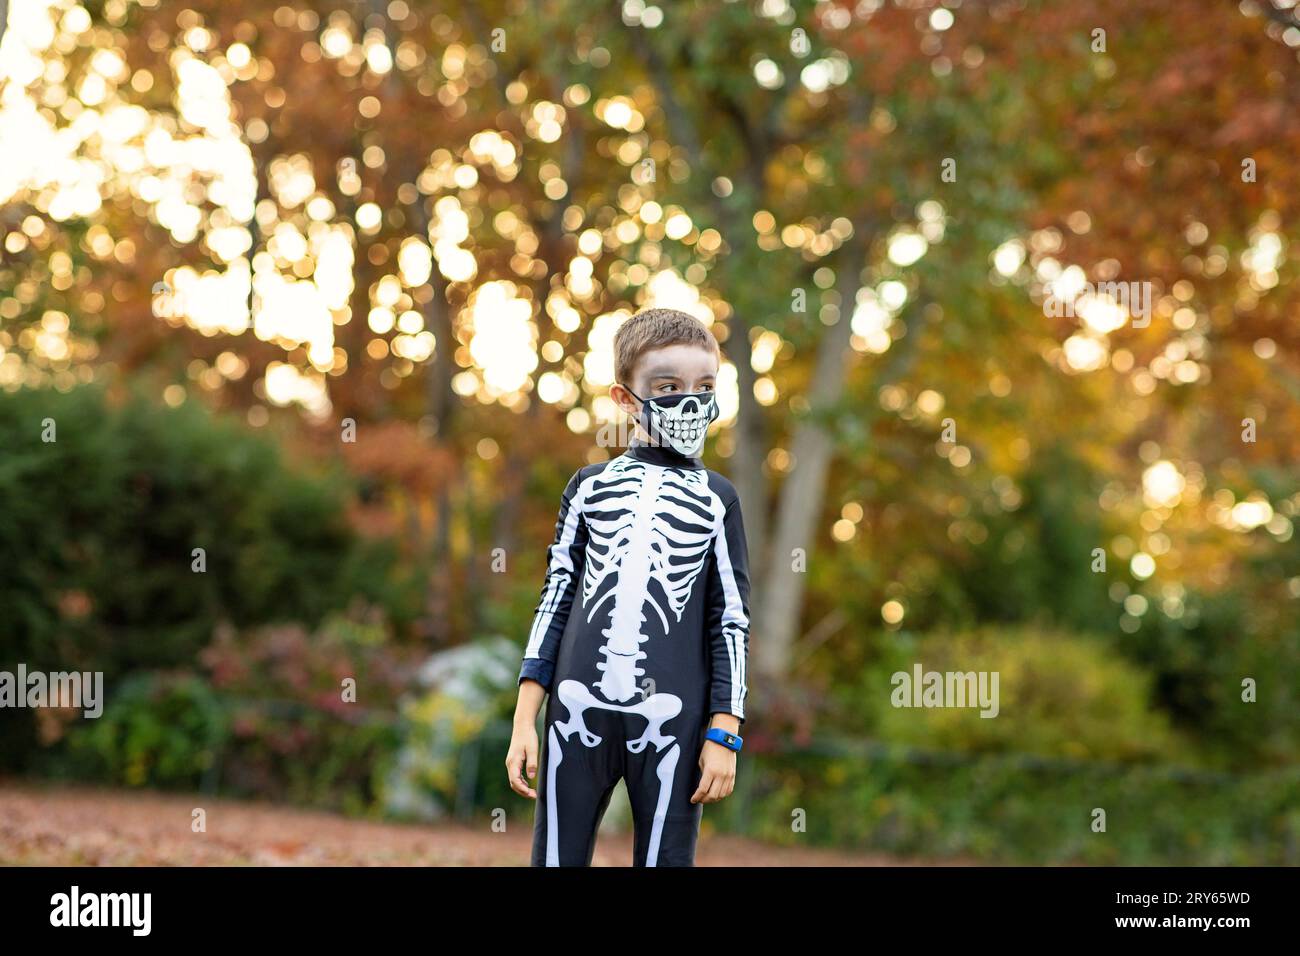 Jeune garçon en costume de squelette Halloween au milieu des feuilles d'automne. Banque D'Images